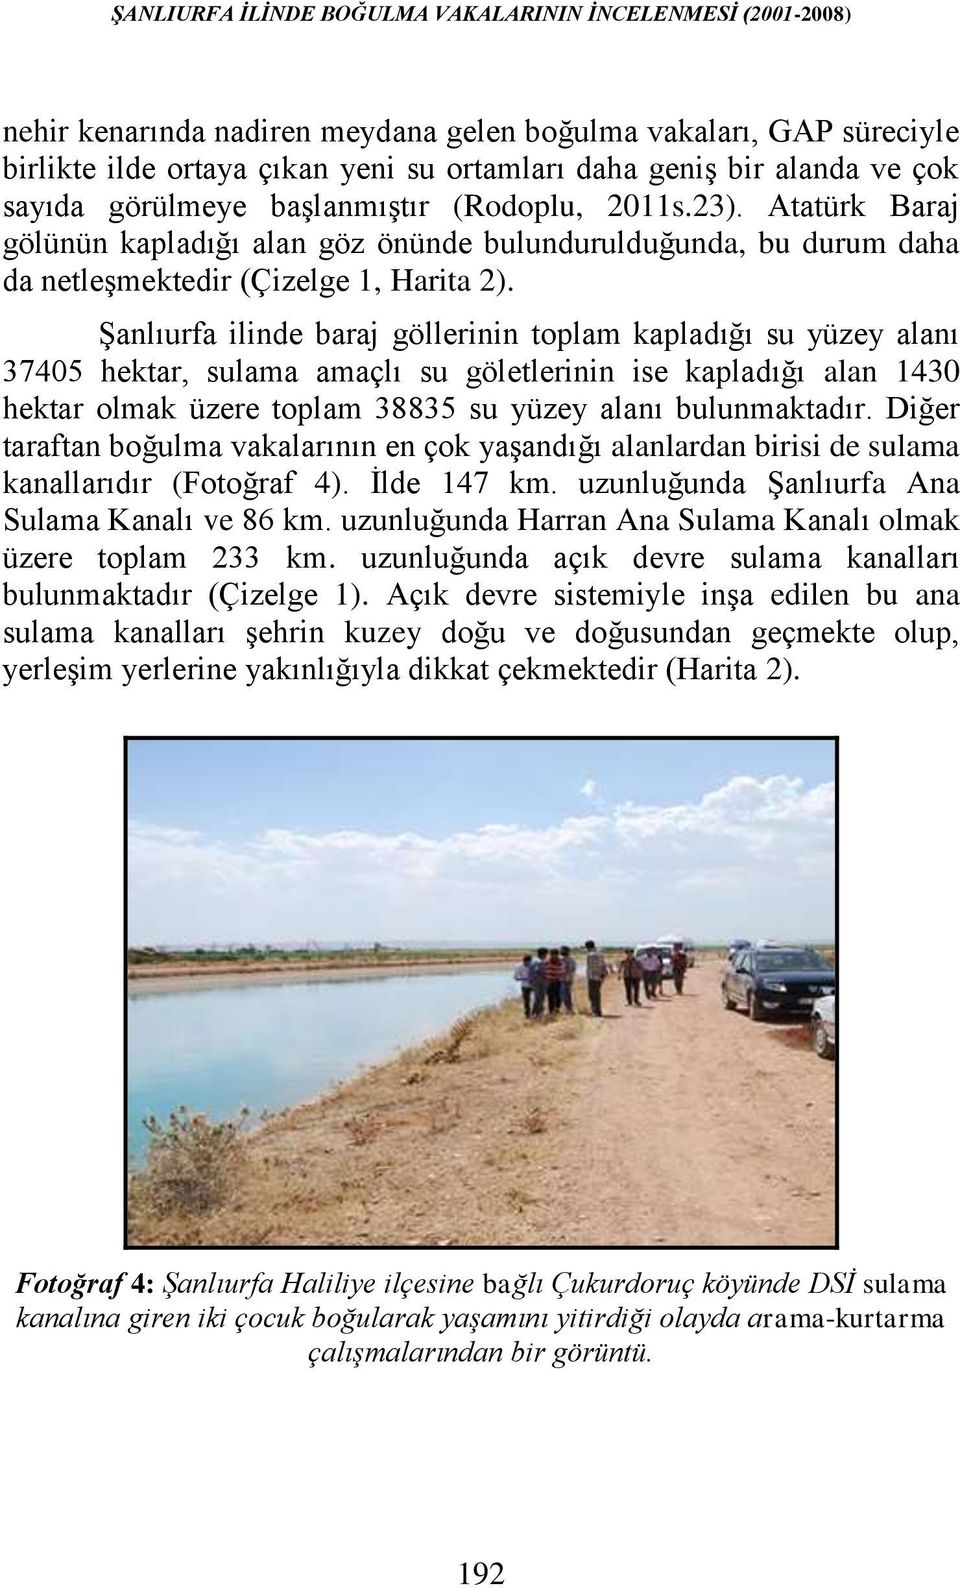 Şanlıurfa ilinde baraj göllerinin toplam kapladığı su yüzey alanı 37405 hektar, sulama amaçlı su göletlerinin ise kapladığı alan 1430 hektar olmak üzere toplam 38835 su yüzey alanı bulunmaktadır.